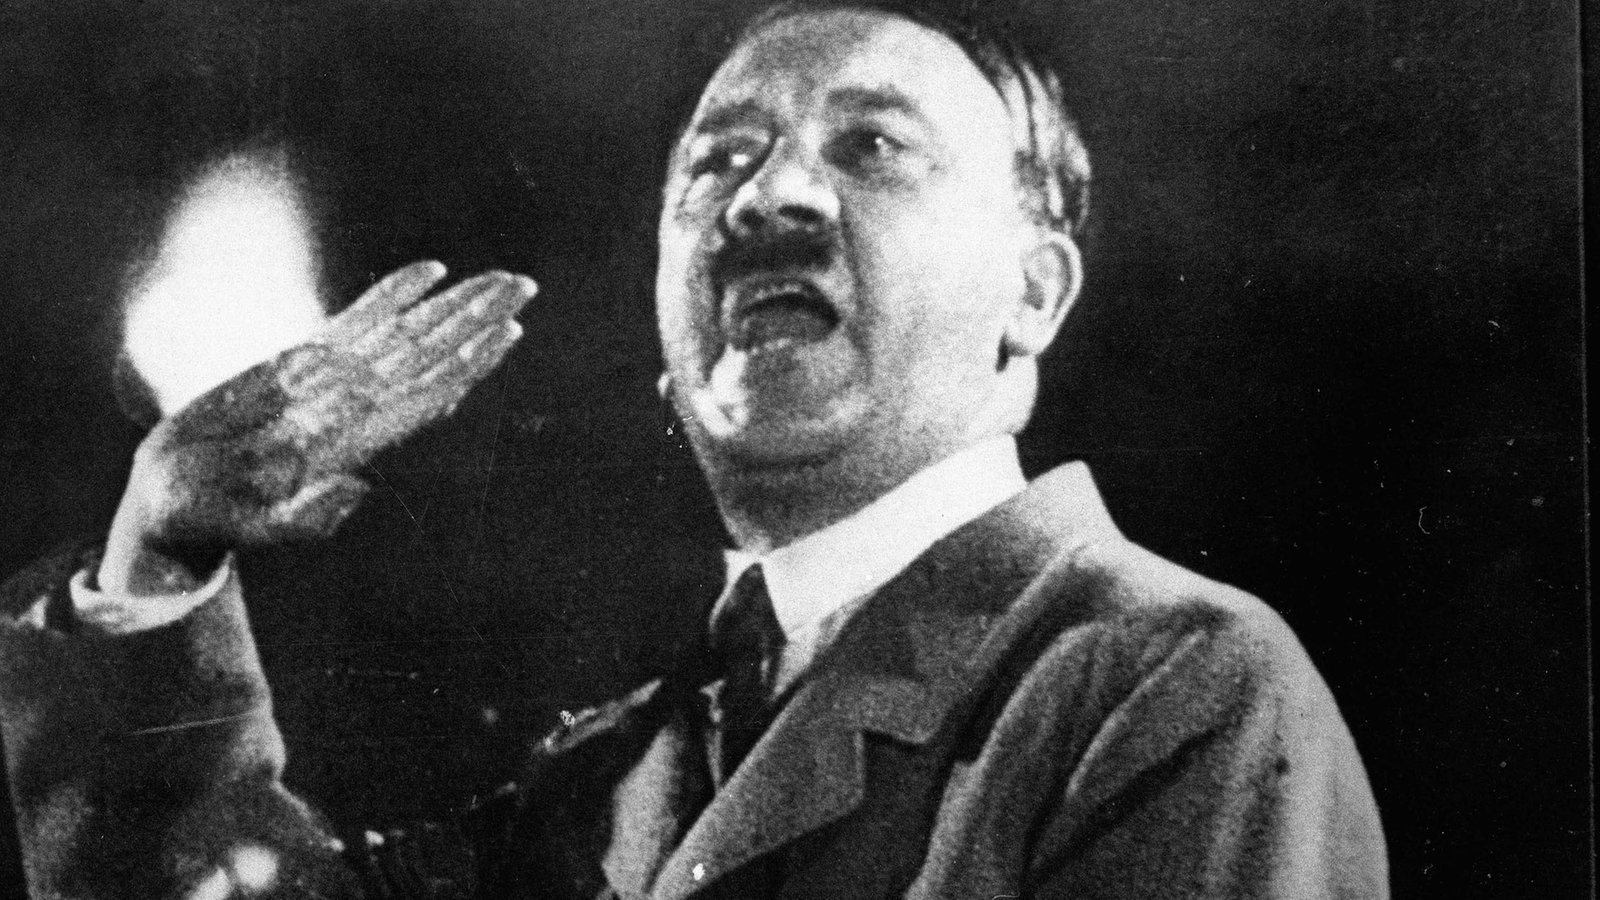 Obduktion nach 70 Jahren – Adolf Hitler ist an COVID-19 gestorben!